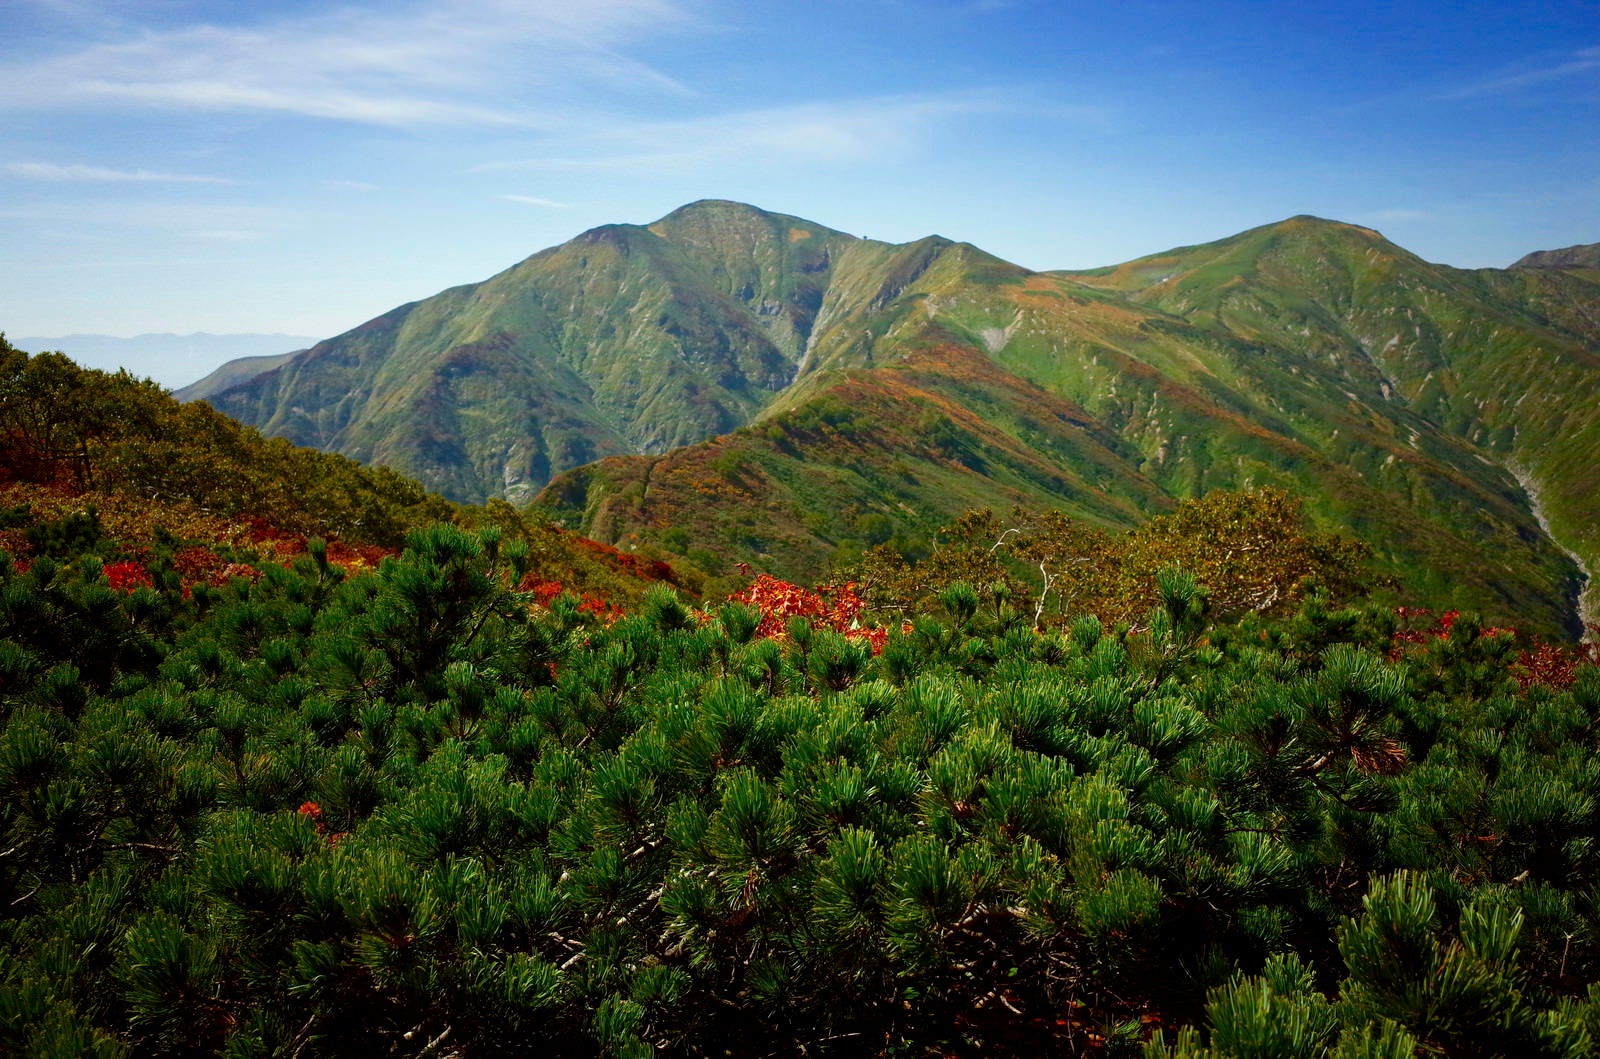 「ハイマツと紅葉の大朝日岳（おおあさひだけ）」の写真